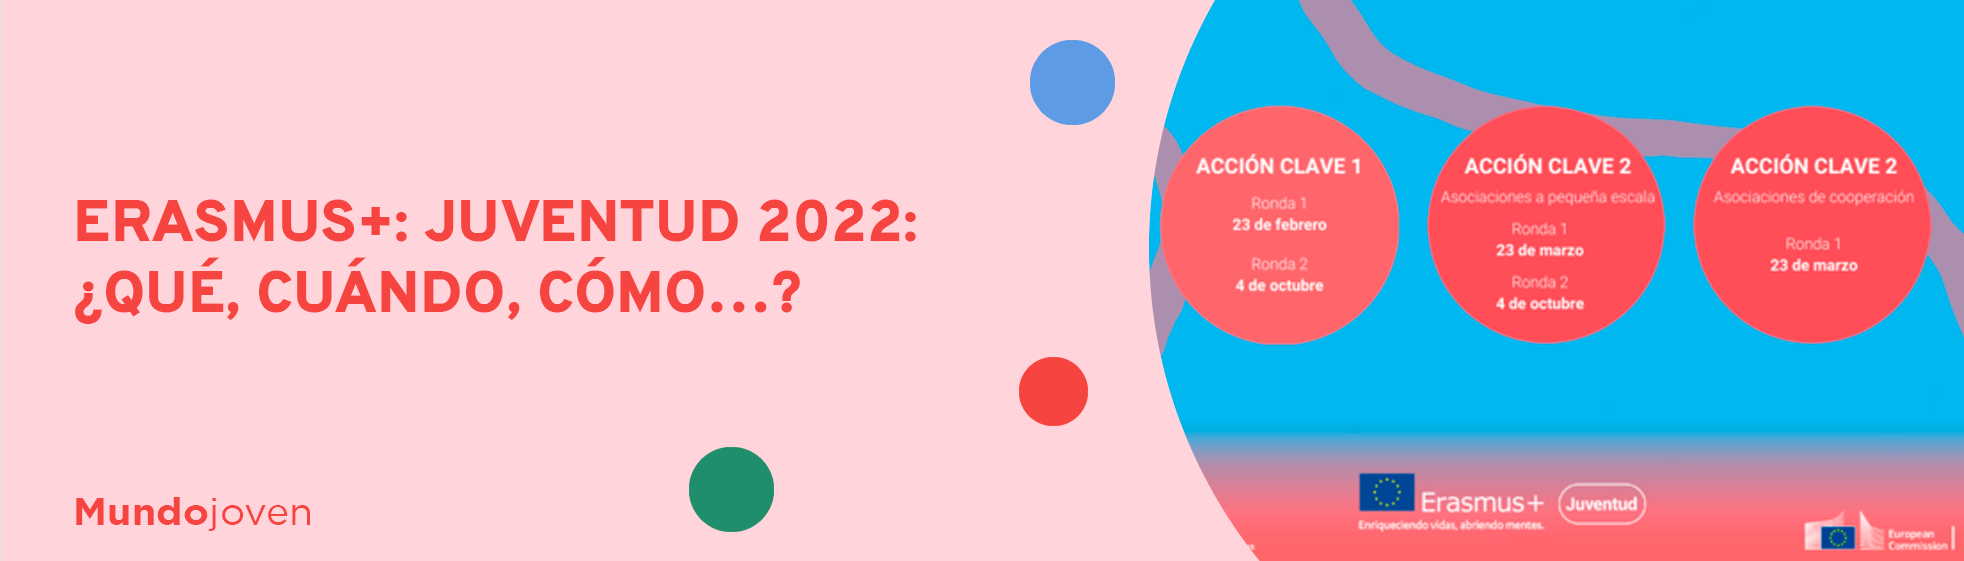 Erasmus+: Juventud 2022: ¿Qué, cuándo, cómo…?